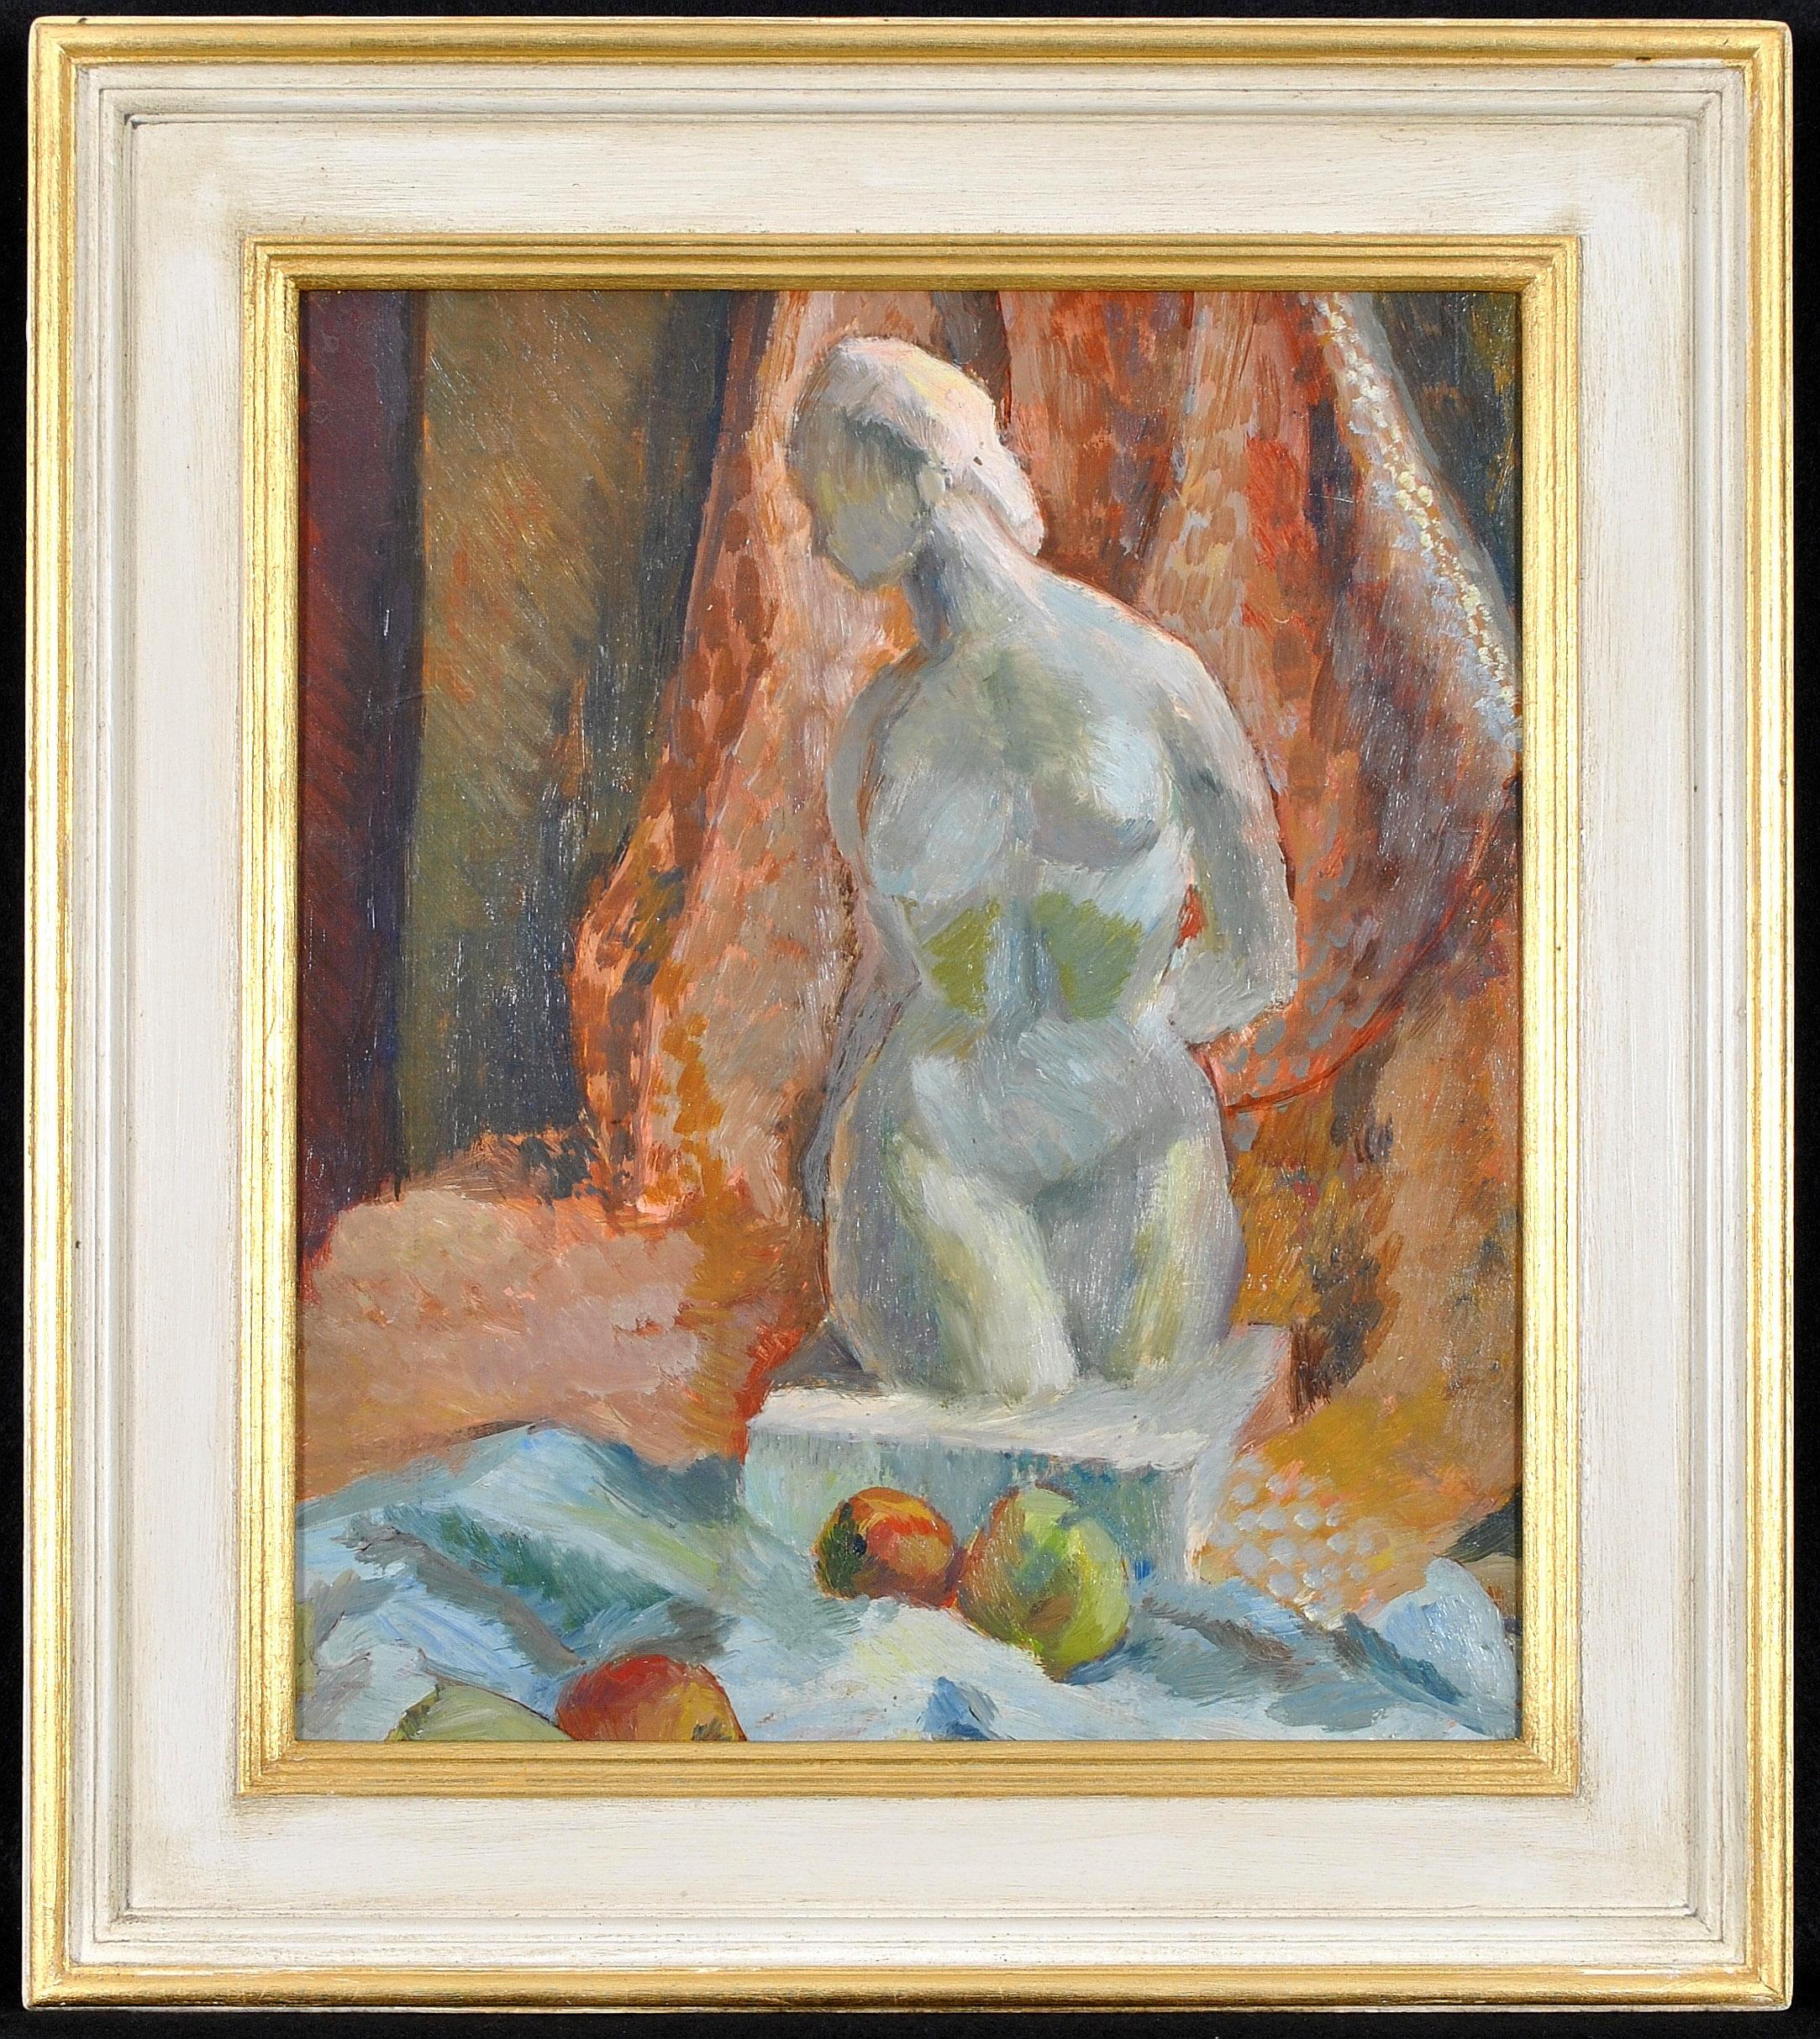 Mid 20th Century French School Still-Life Painting - Bust of a Lady - Mid 20th Century French Impressionist Still Life Painting